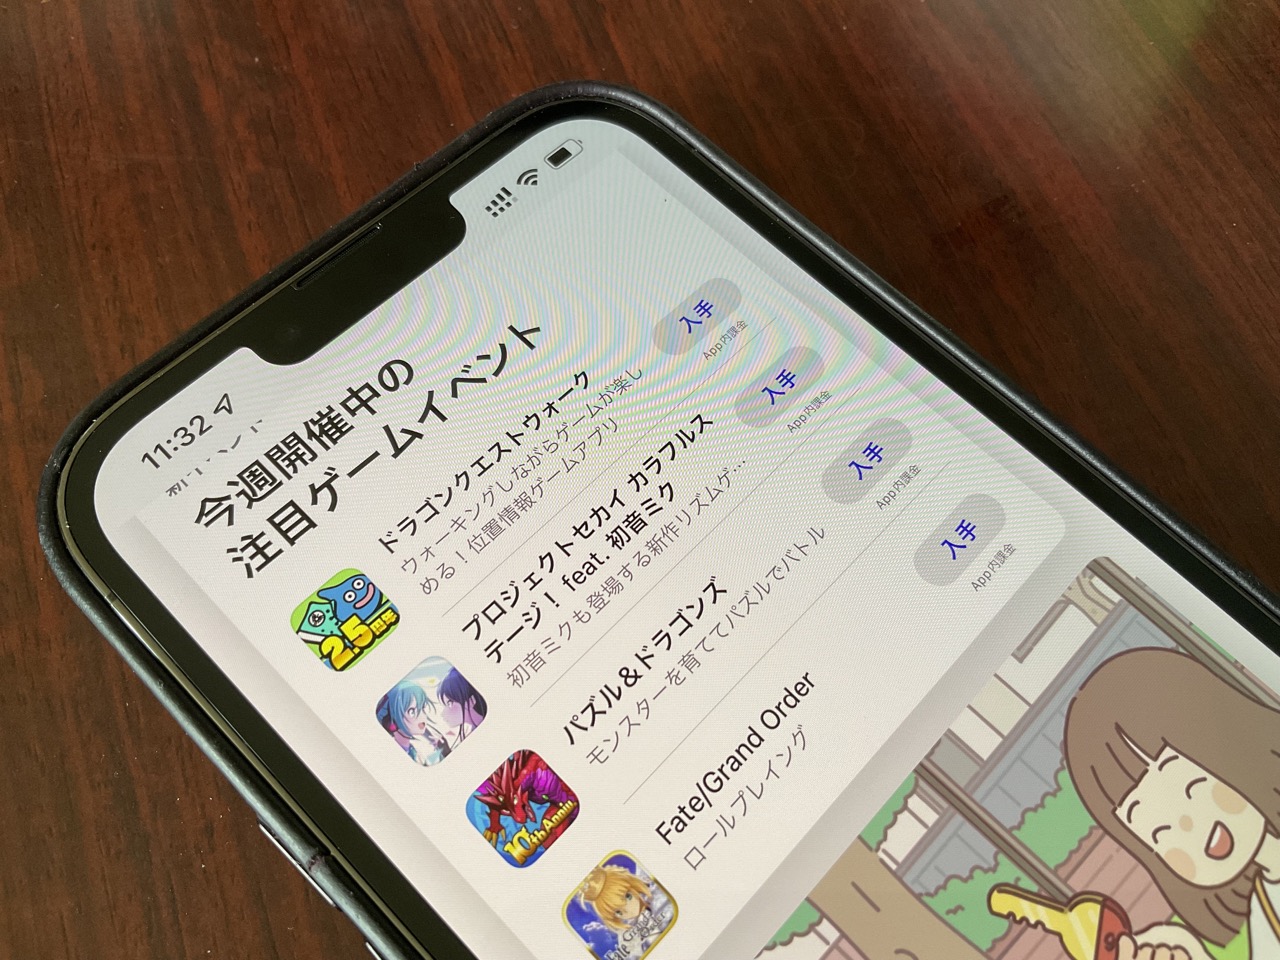 iPhone conectado a la App Store japonesa